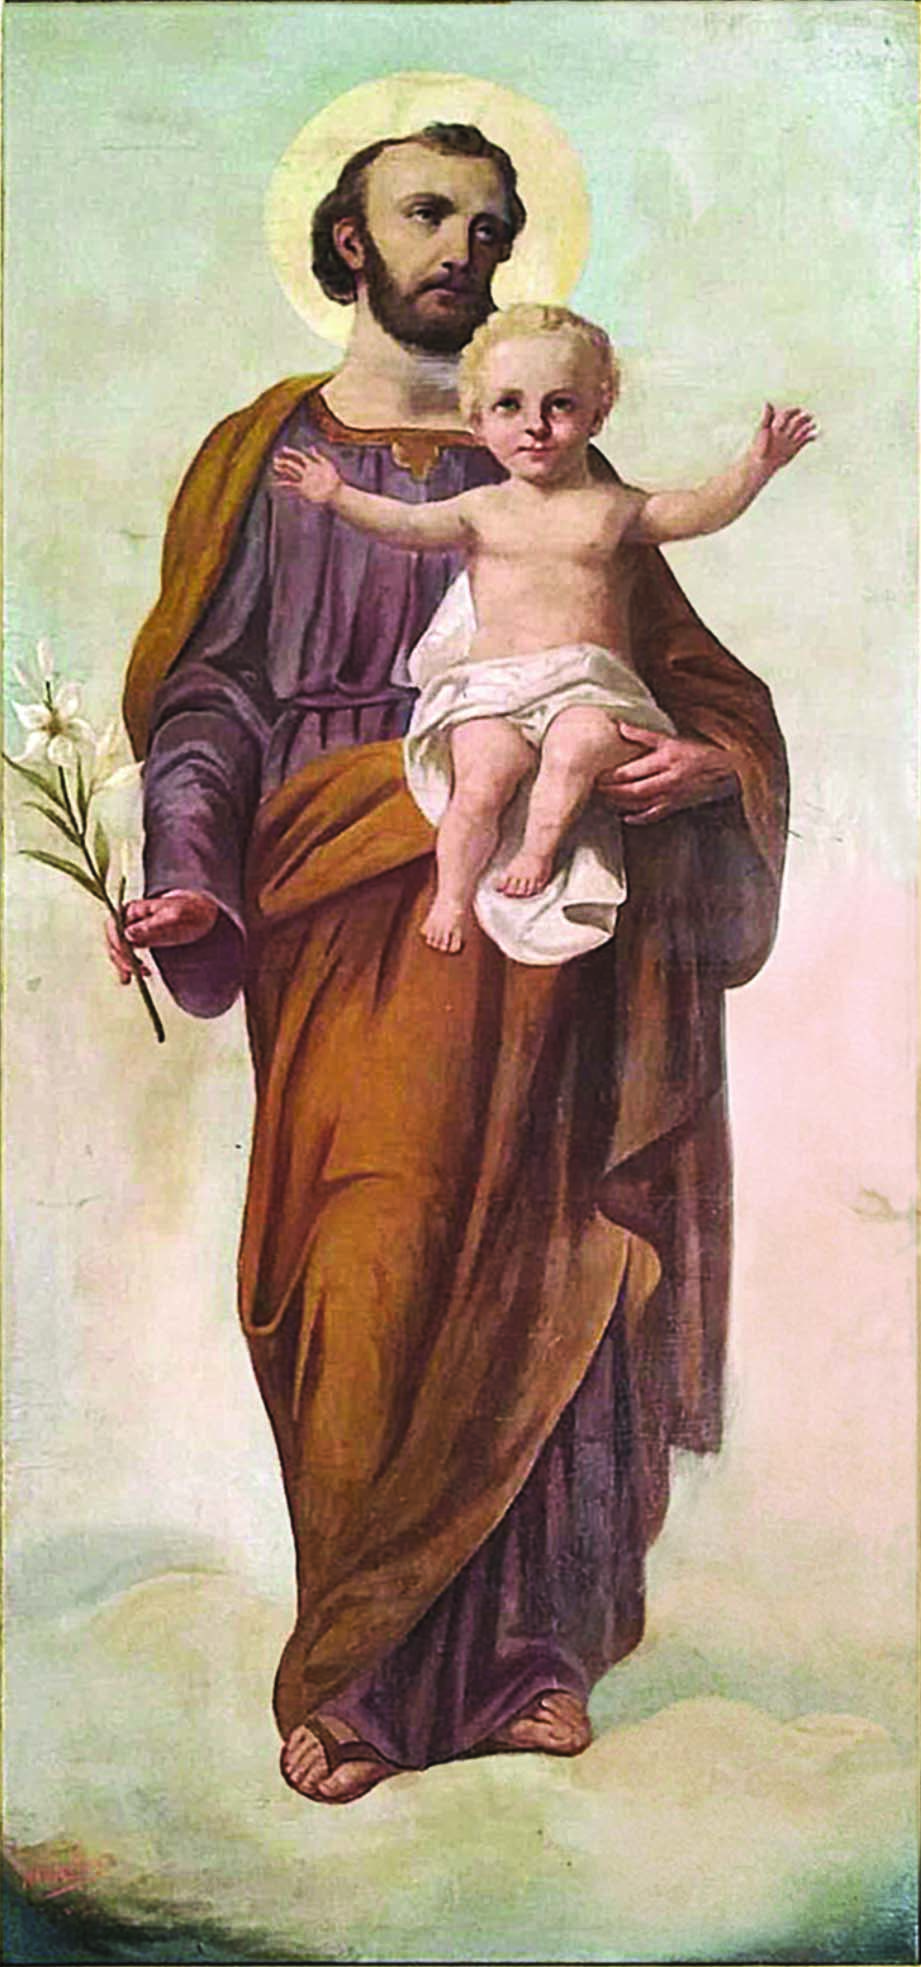 Autore ignoto, Effigie di  san Giuseppe con il Bambino,  sec. XX, Chiesa parrocchiale di Bovolone (Verona).